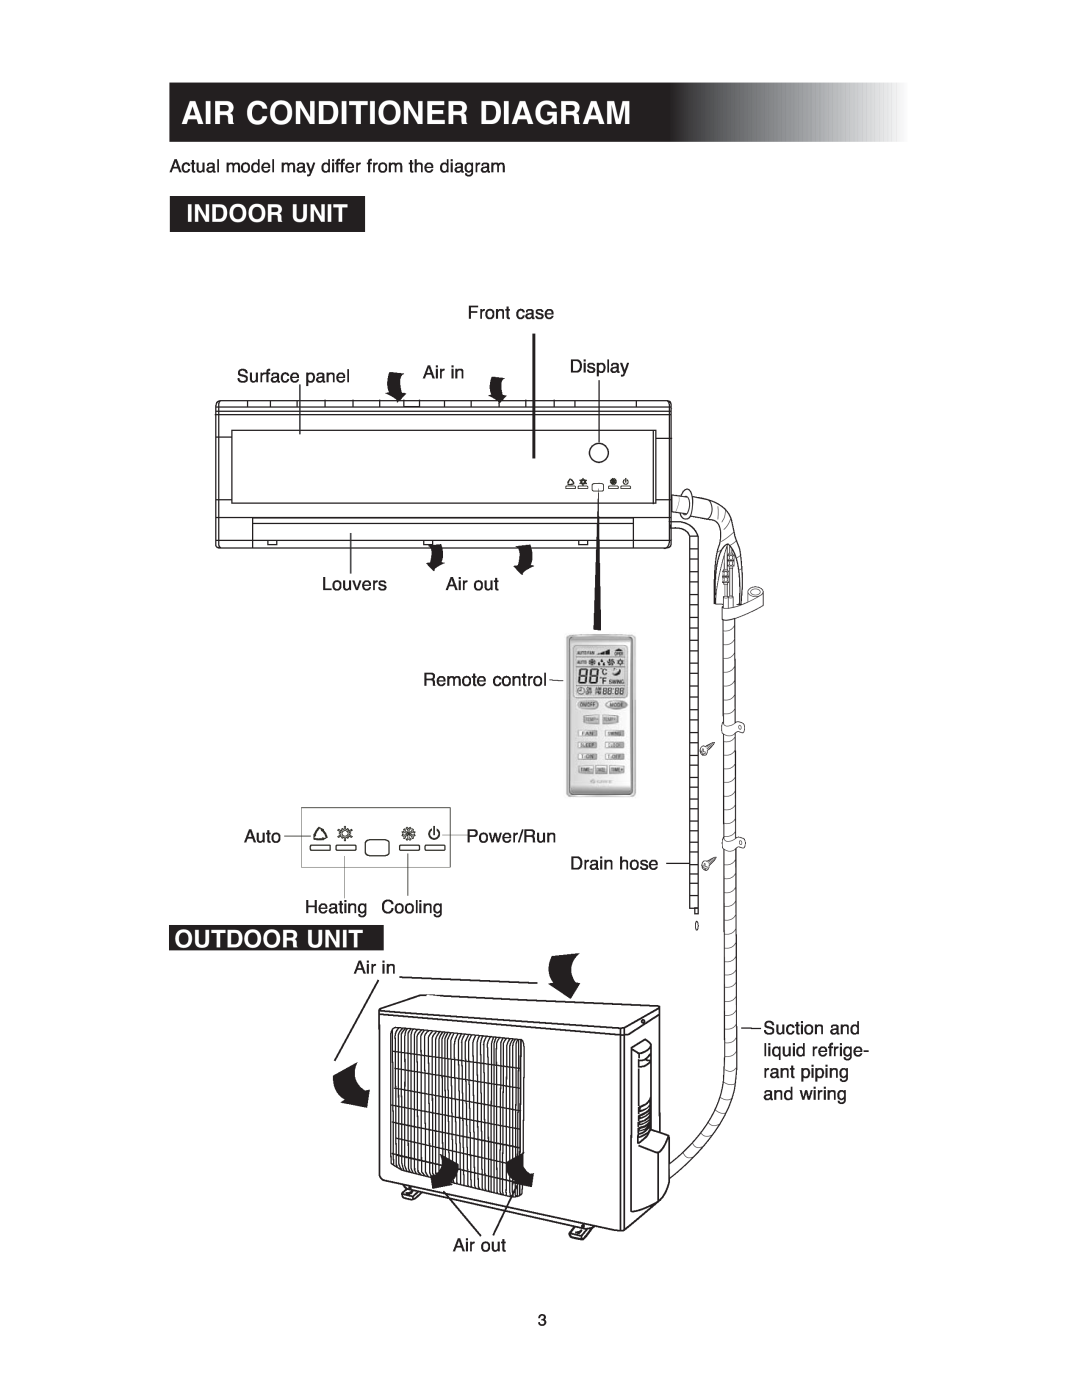 Sunrise Global 13-05024, 13-05020 owner manual Air Conditioner Diagram, Indoor Unit, Outdoor Unit 